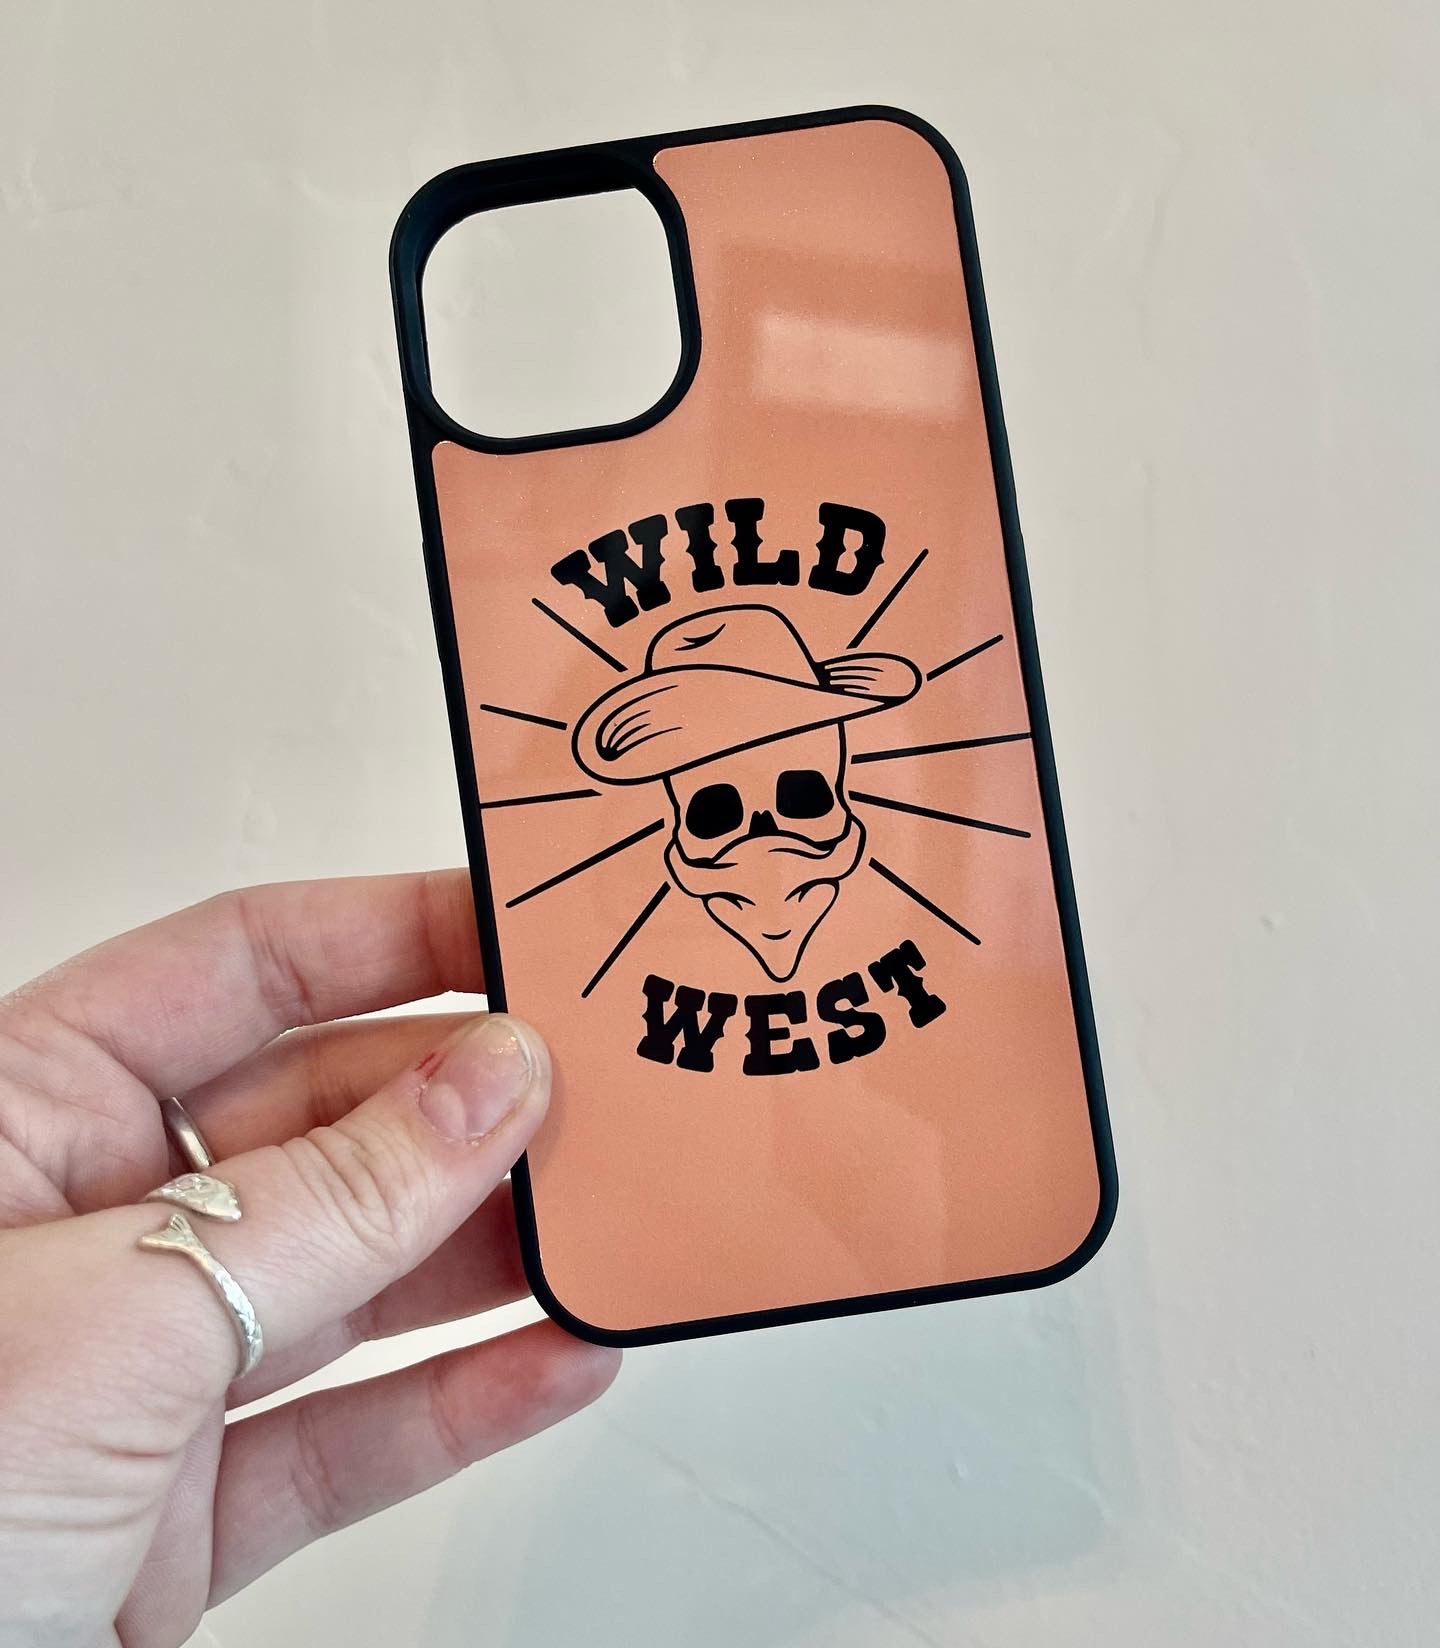 Wild West Phone Case